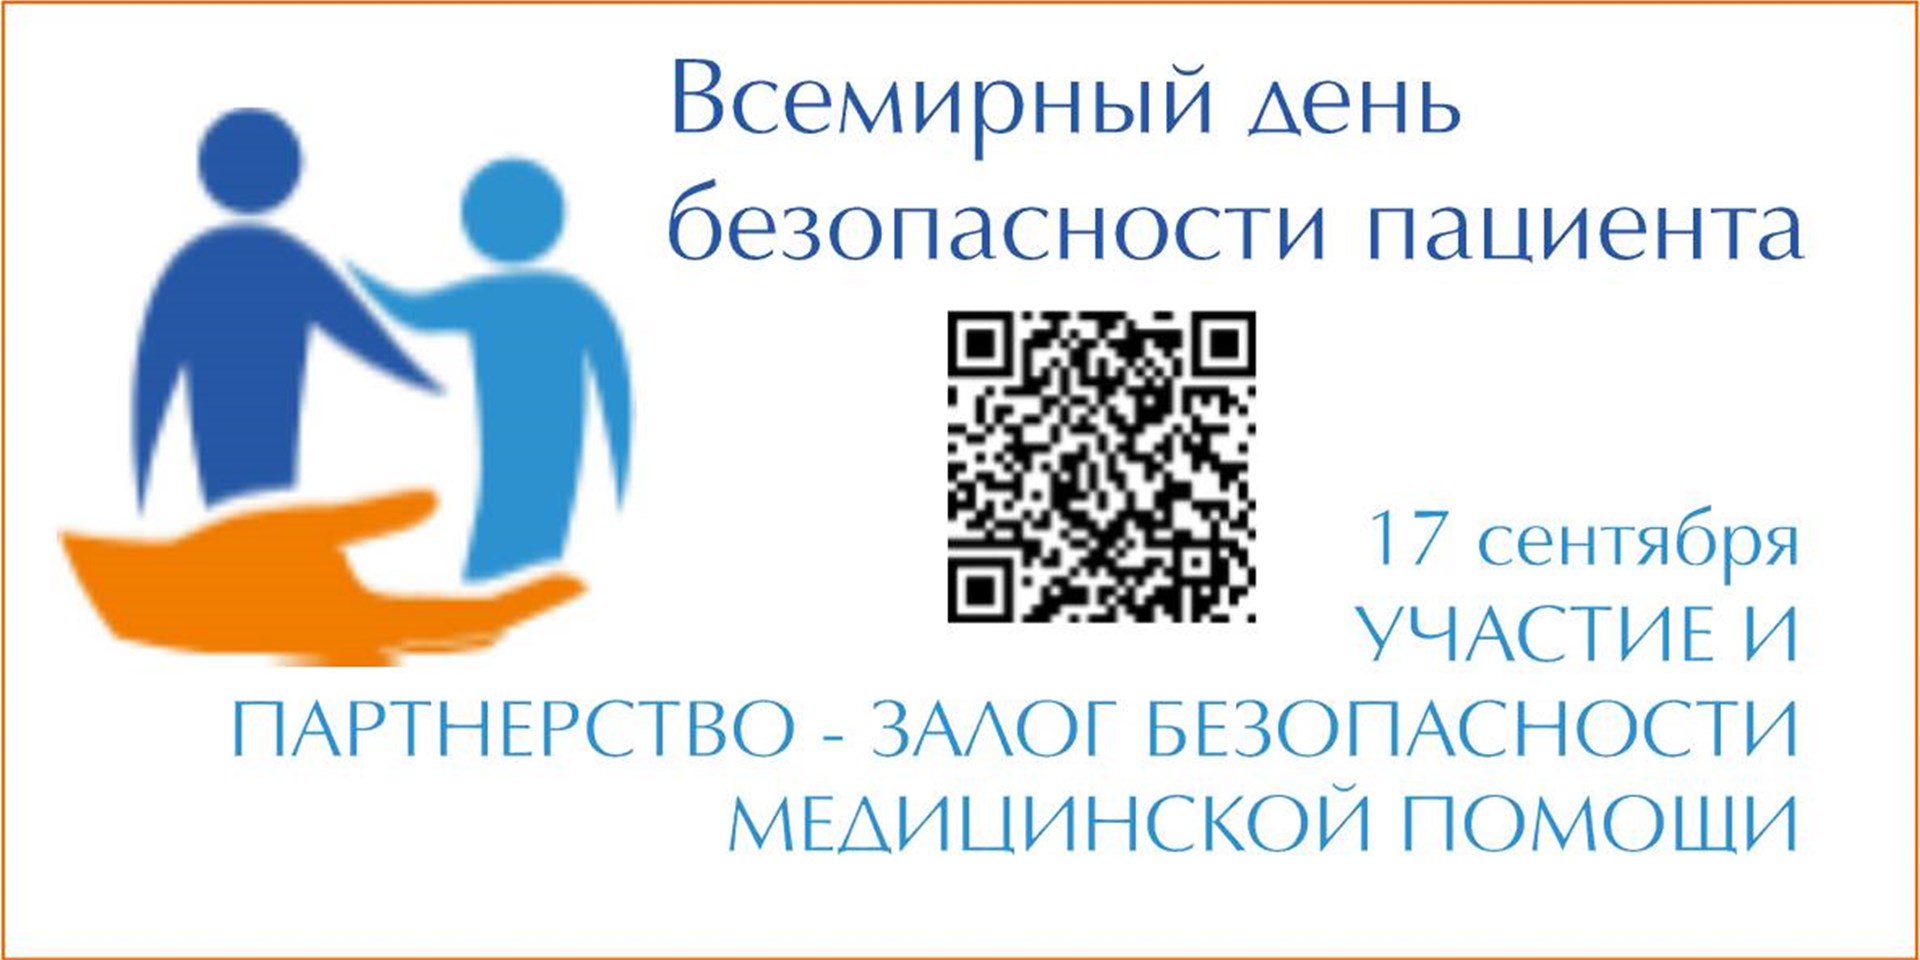 28.08.2020 Москва. 17 сентября - Всемирный день безопасности пациентов